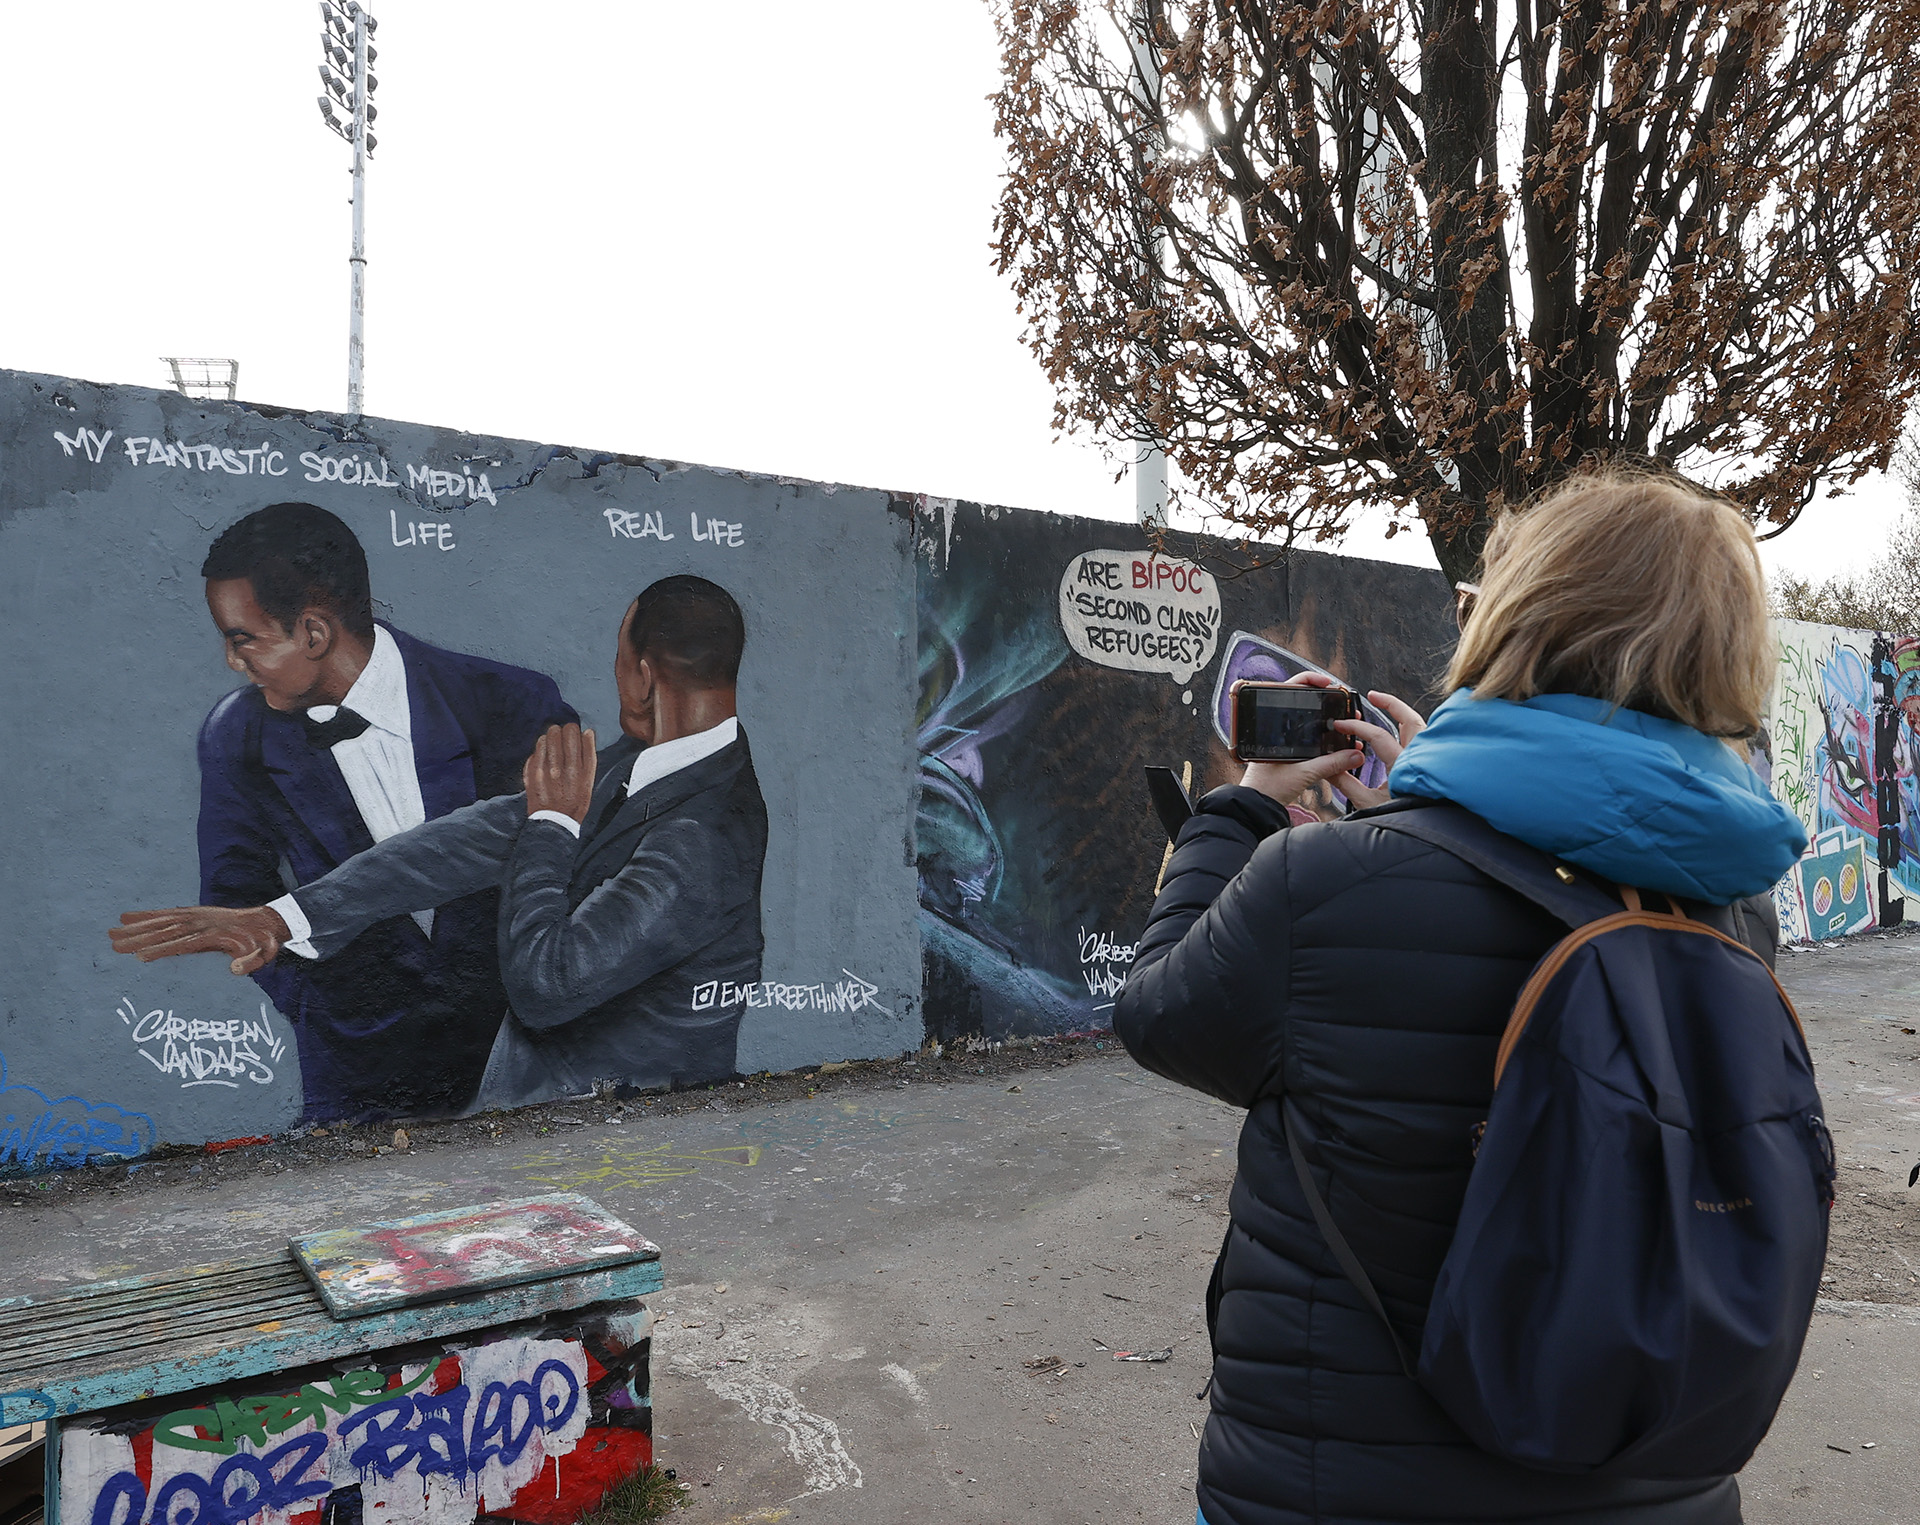 Graffiti Will Smith pofonjáról az Oscar-gálán